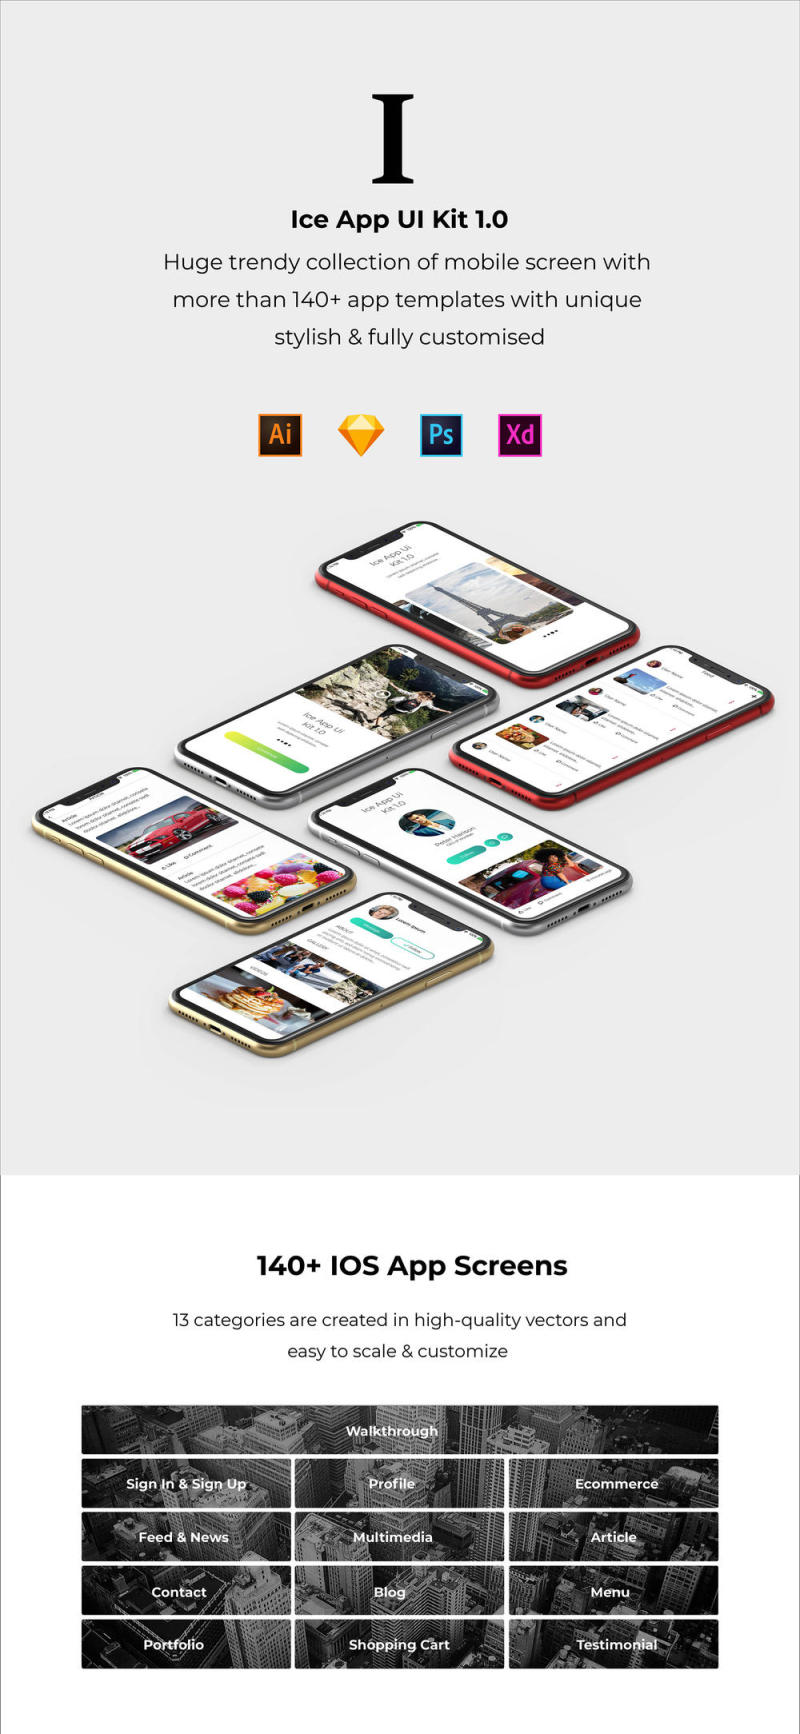 冰的iOS UI套件XD，插画，Photoshop和素描，冰应用UI工具包